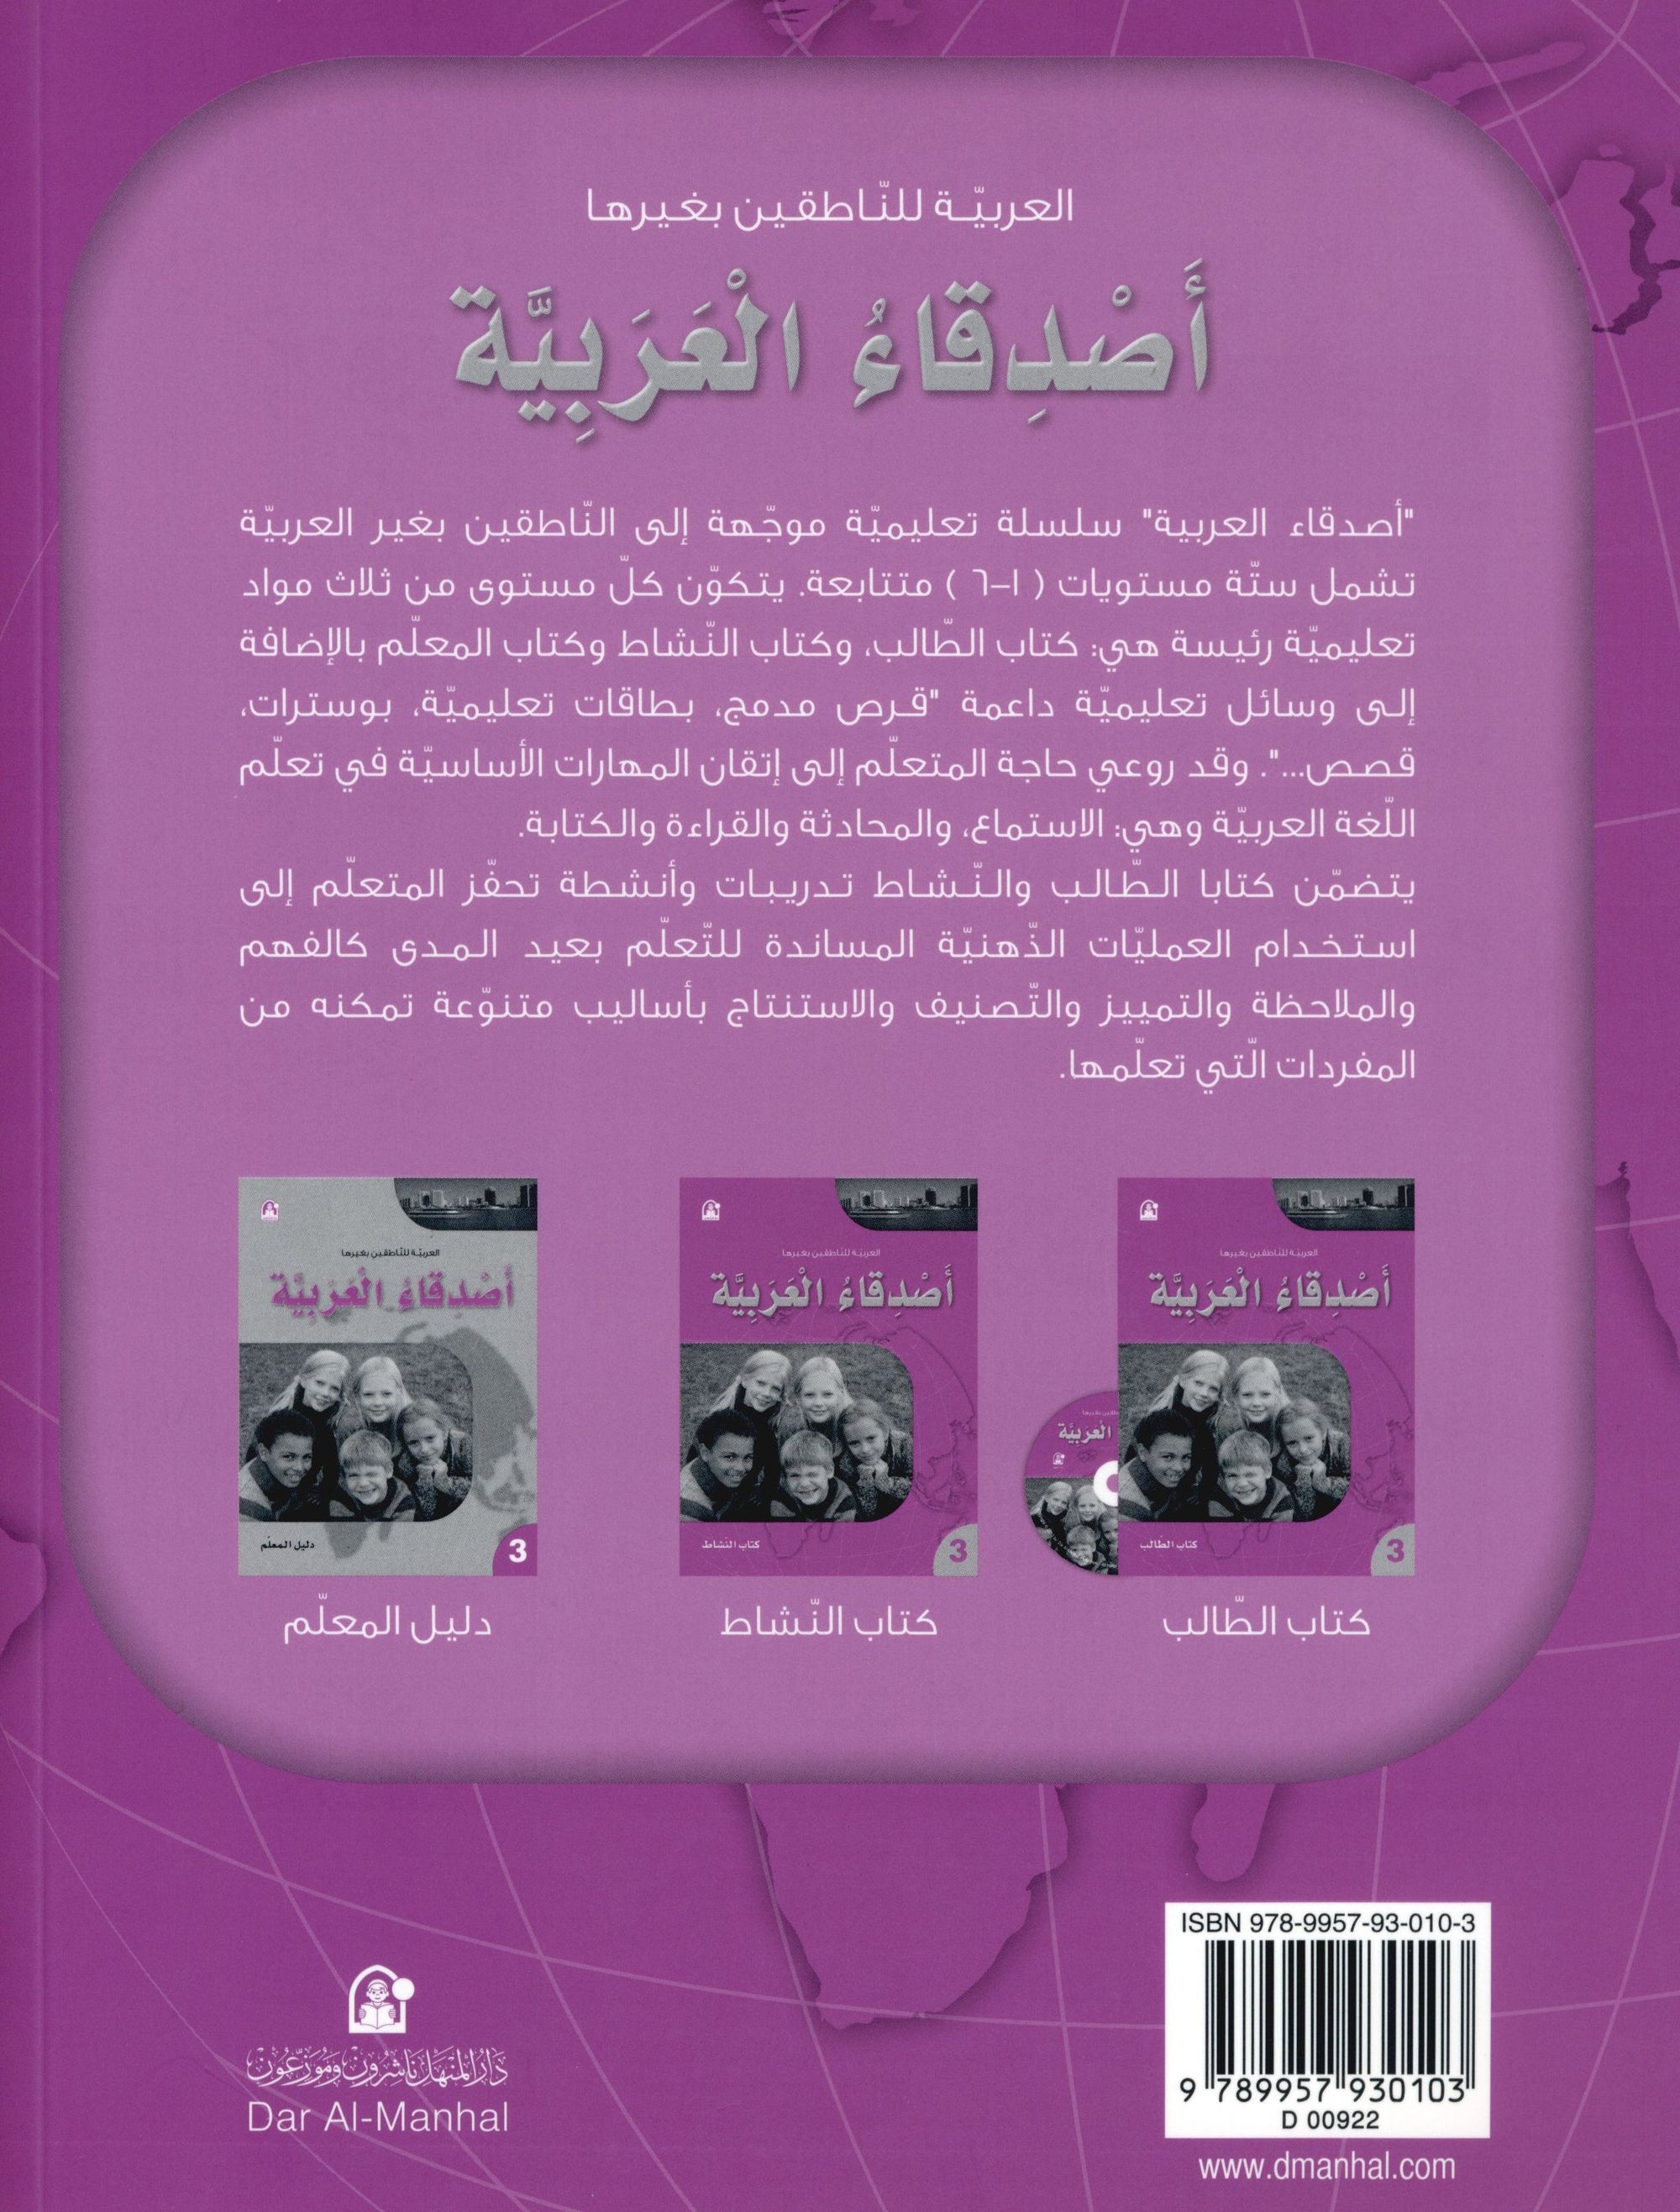 Arabic Friends Workbook Level 3 أصدقاء العربية  كتاب النشاط